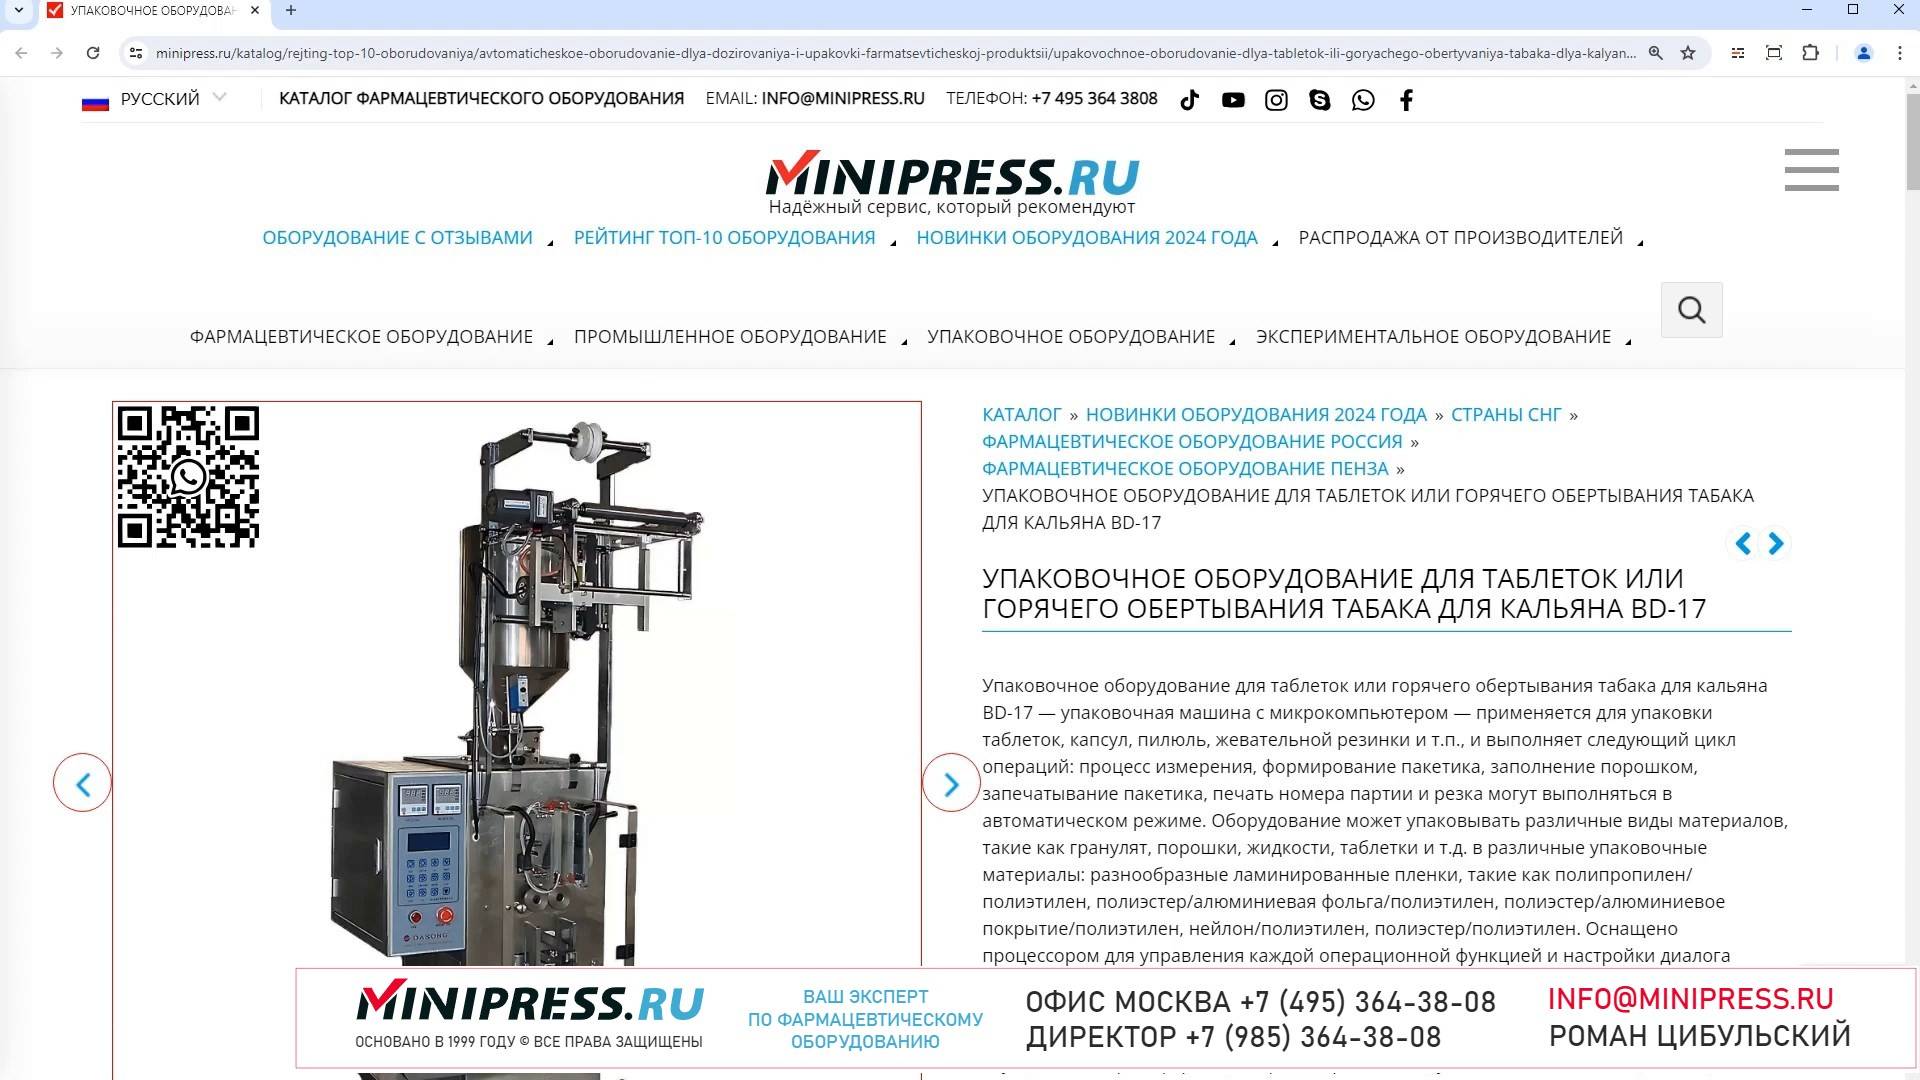 Minipress.ru Упаковочное оборудование для таблеток или горячего обертывания табака для кальяна BD-1